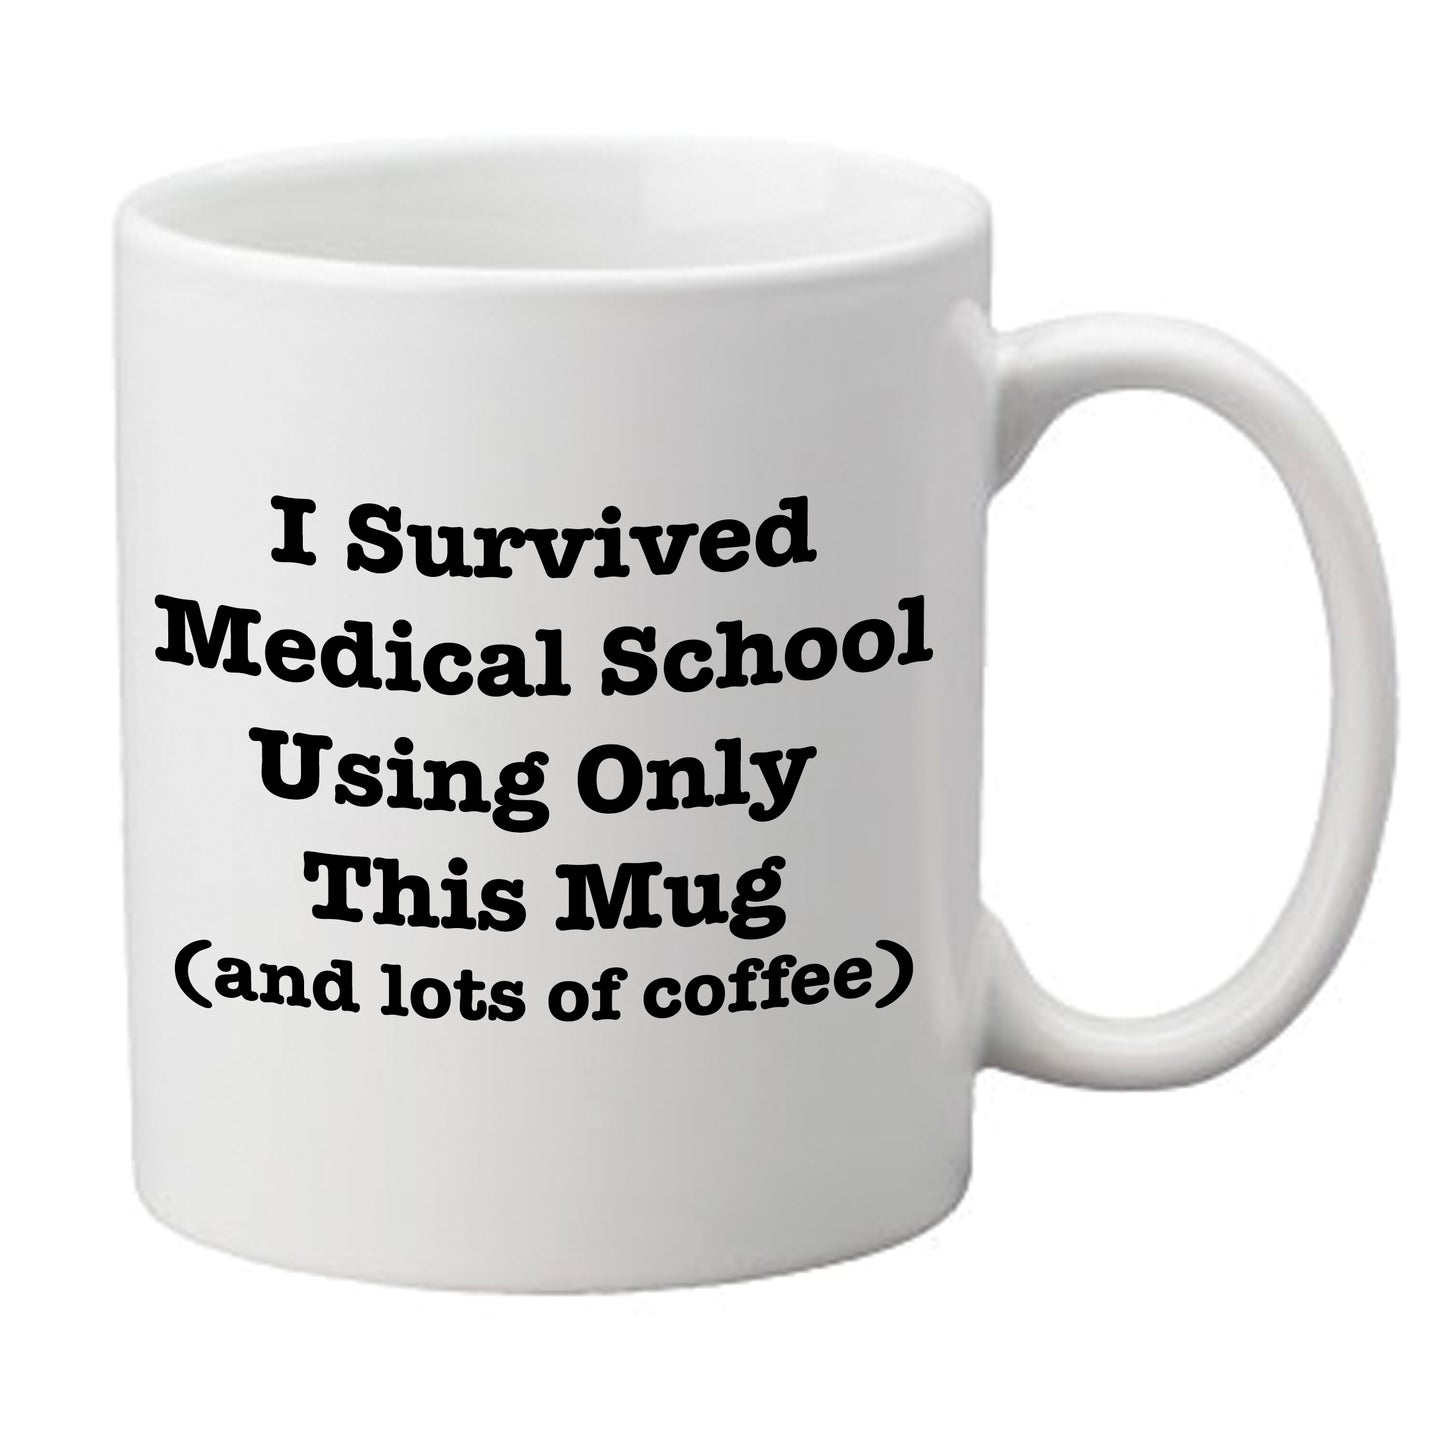 'I Survived Medical School' Mug